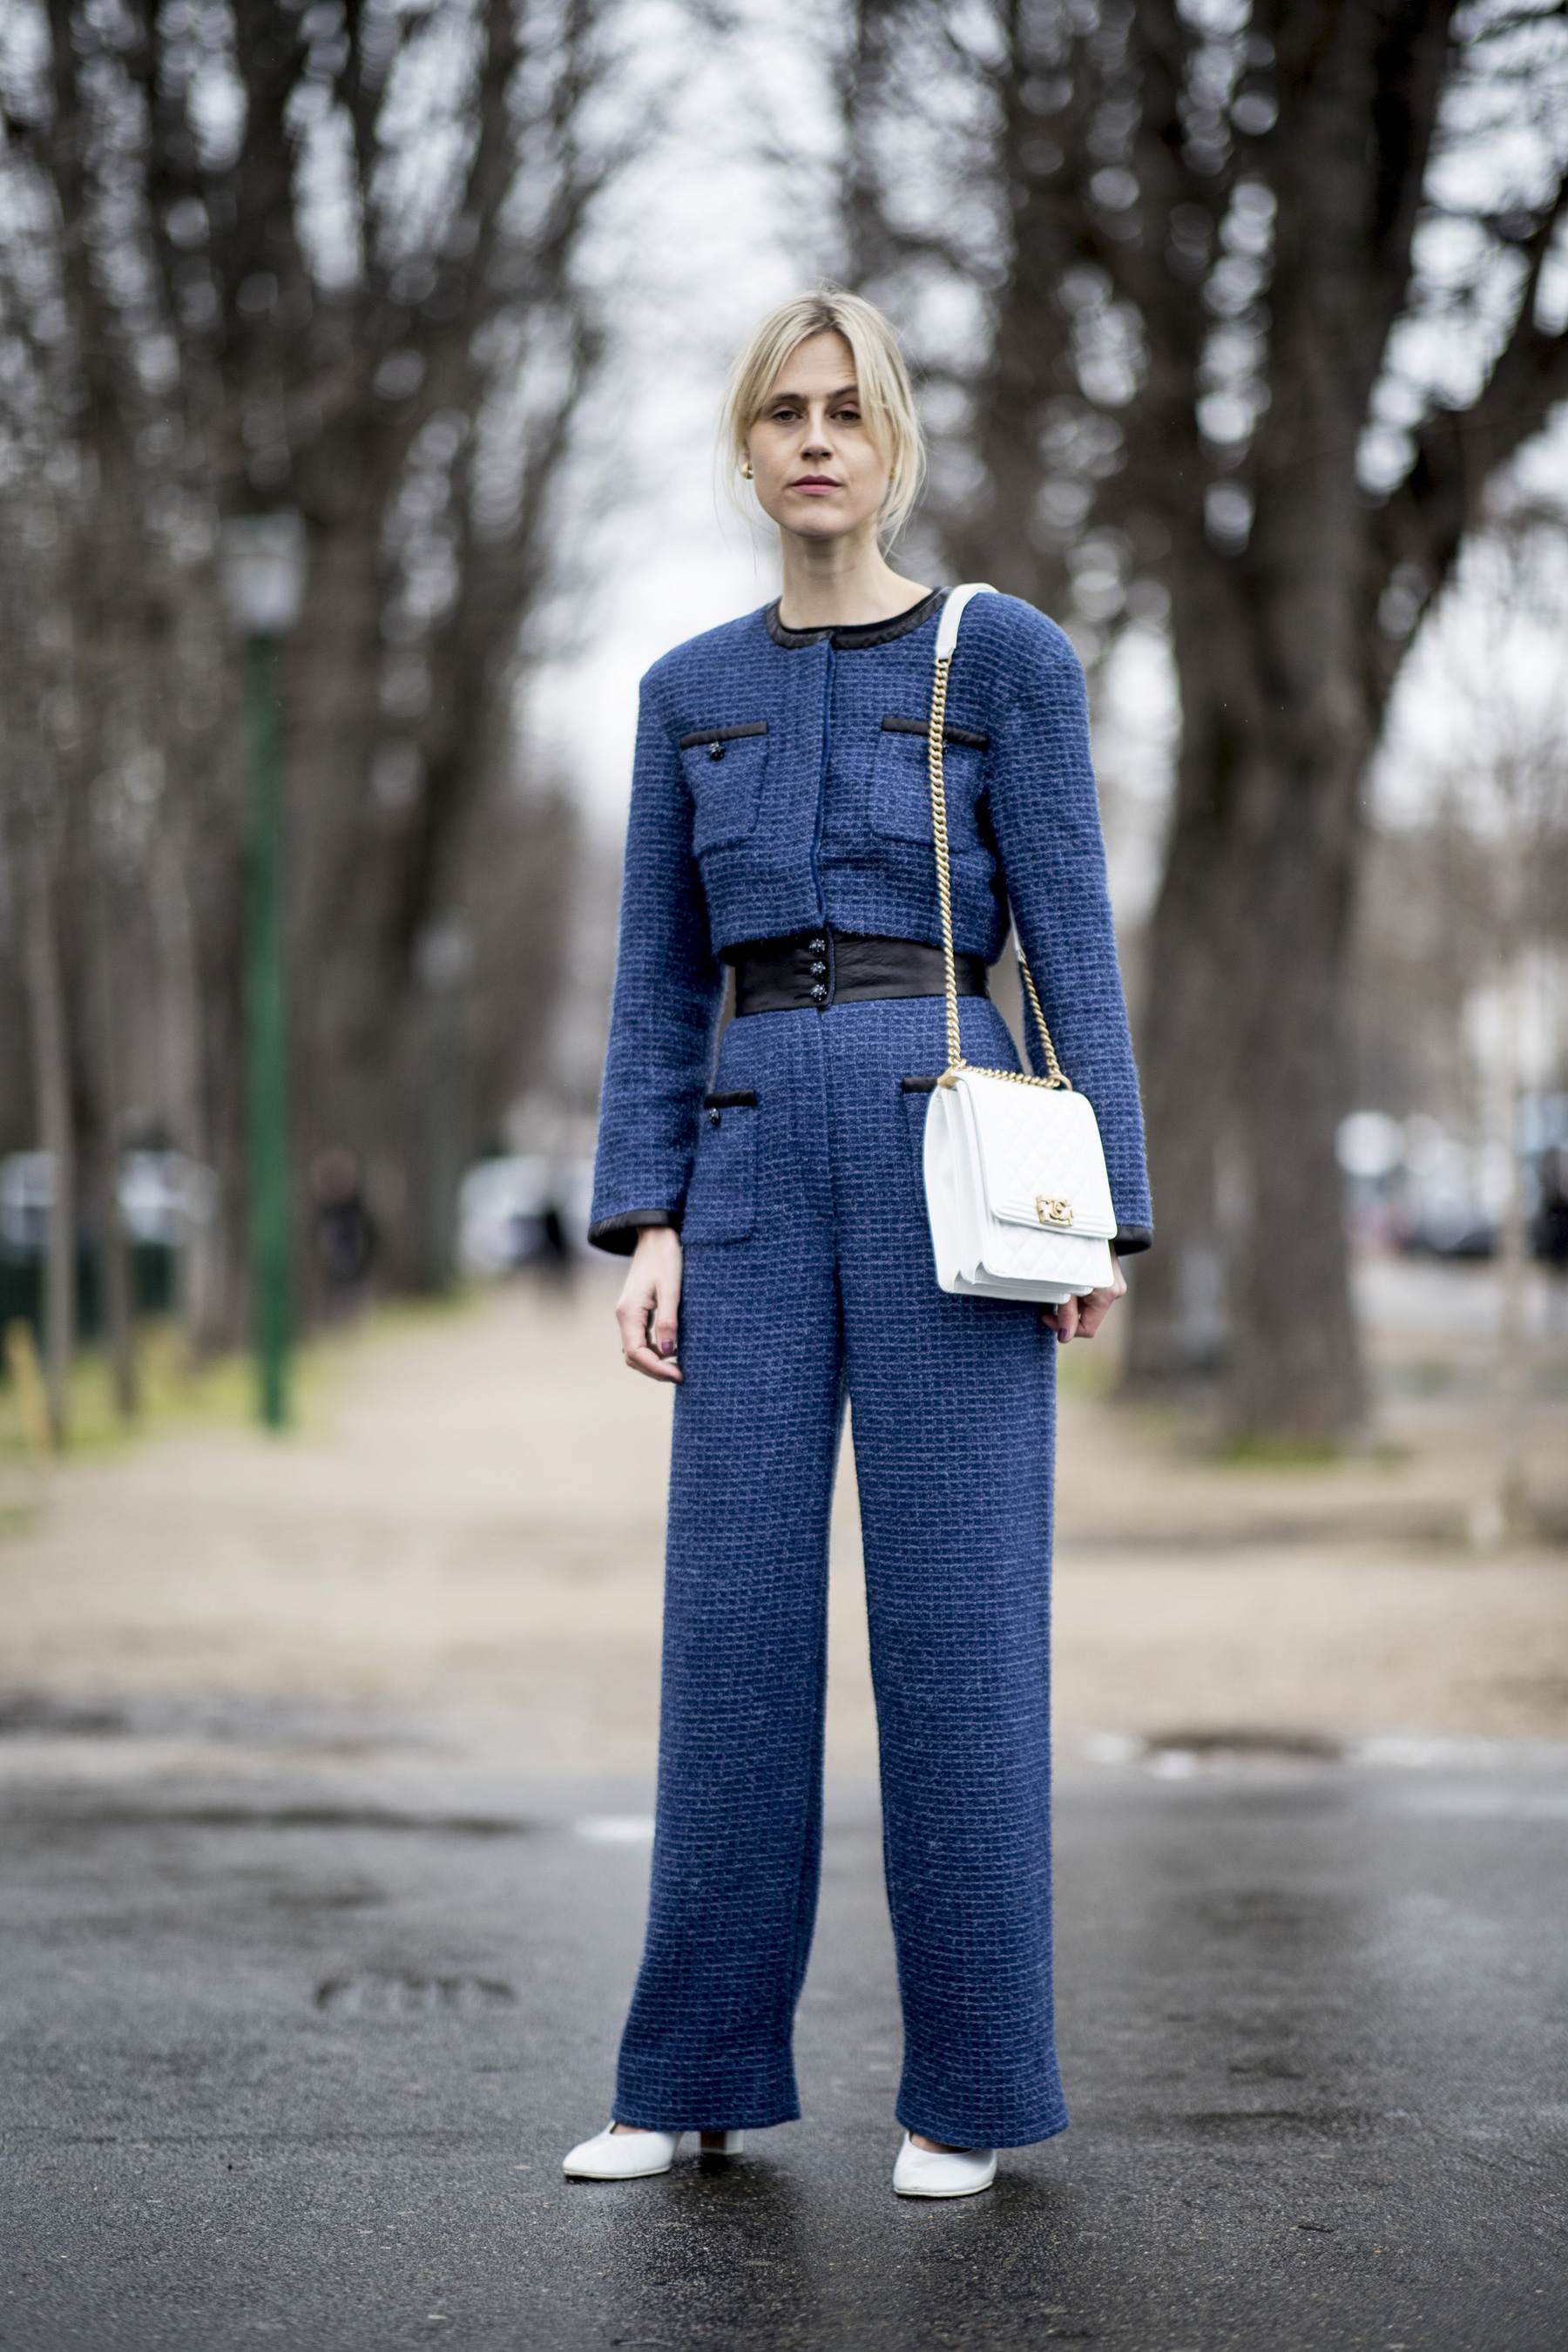 Sui classic blue cho thời trang công sở ngày lạnh